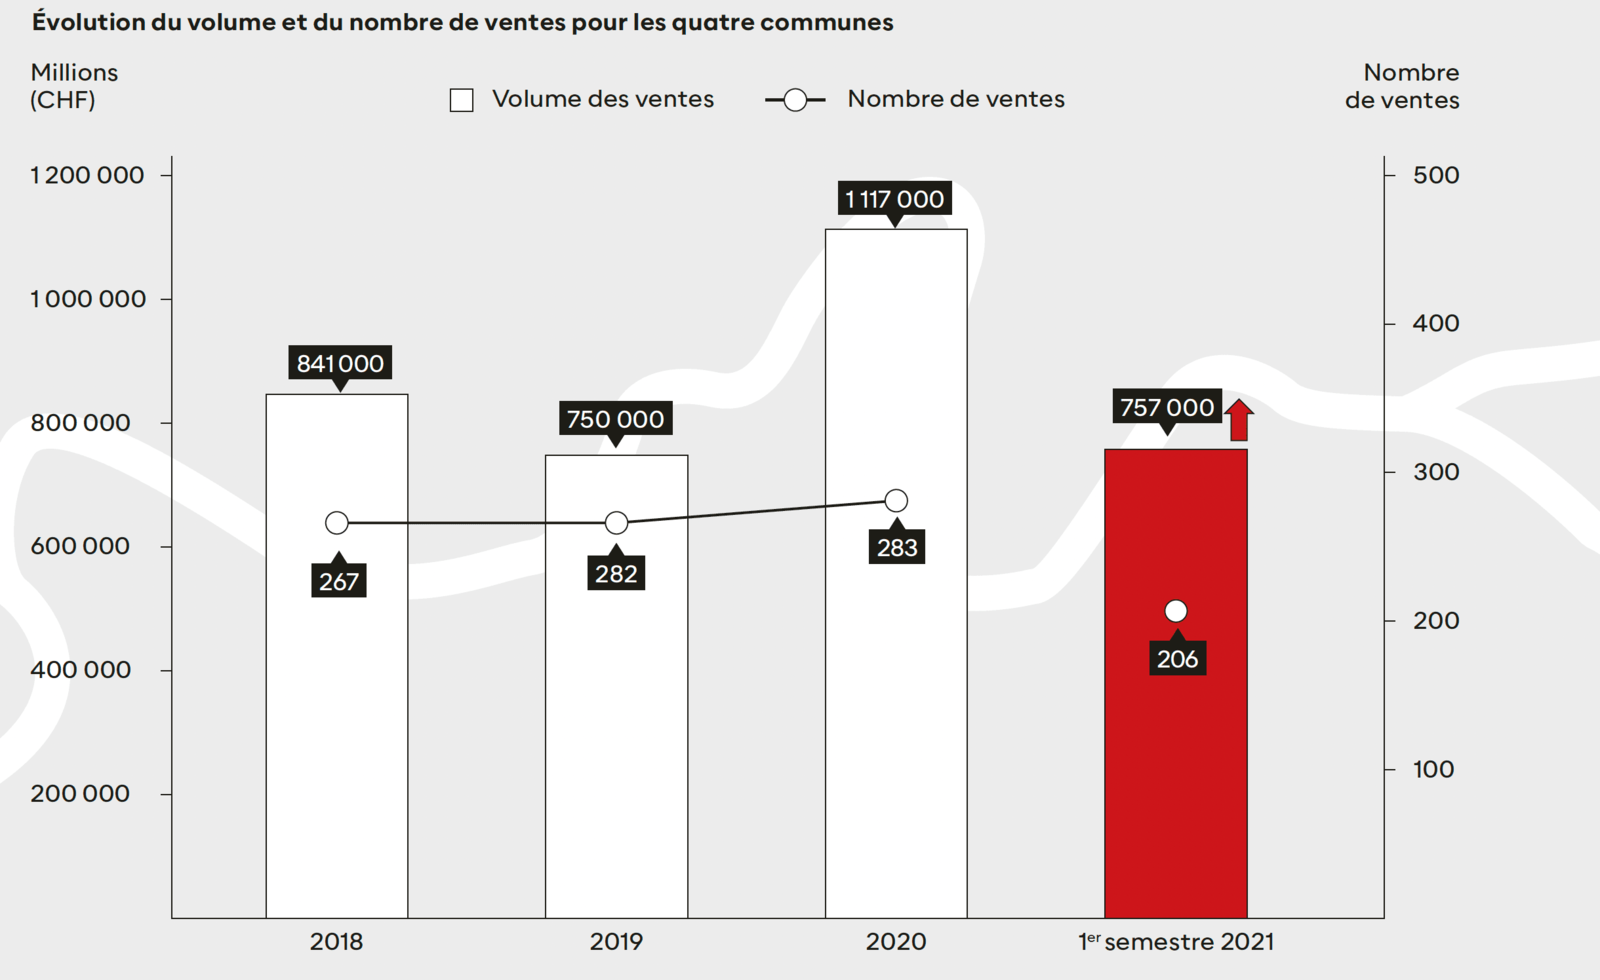 Graphique de l'évolution du volume et du nombre de ventes pour les communes entre 2018 et 2021